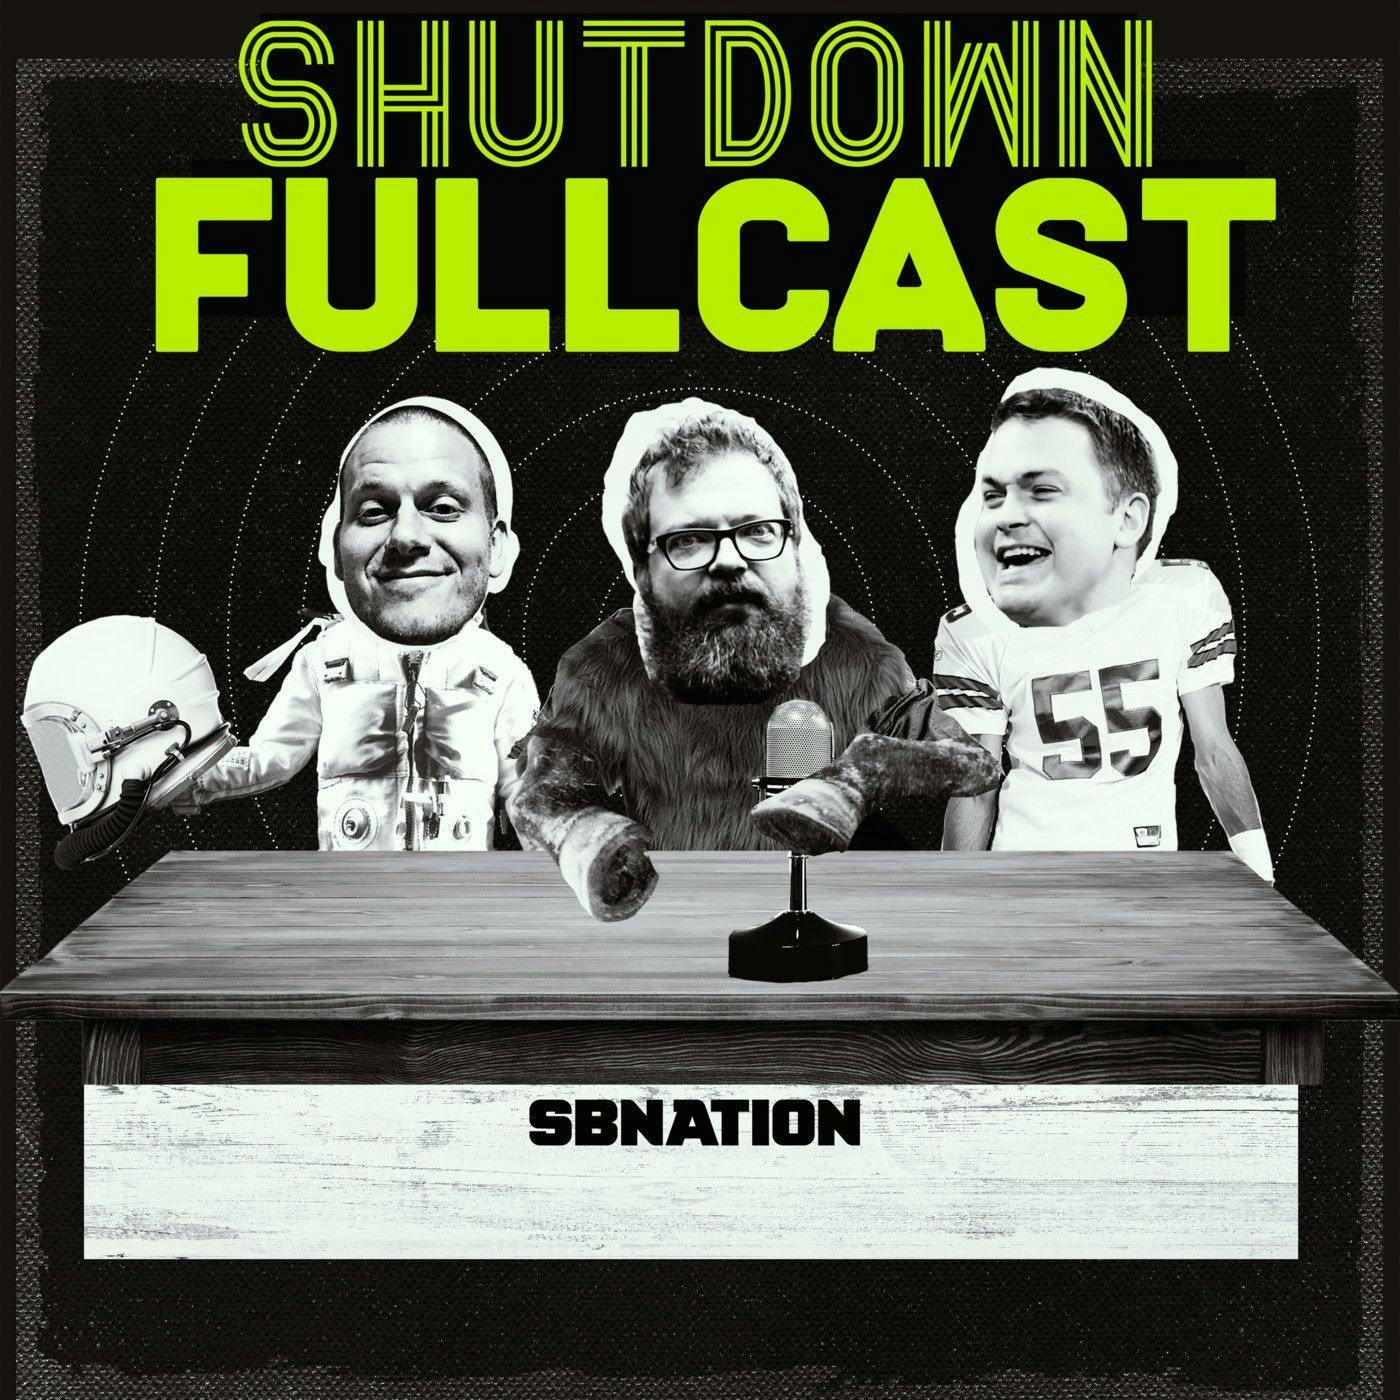 Shutdown Fullcast 40 for 40: The 2017 Frisco Bowl